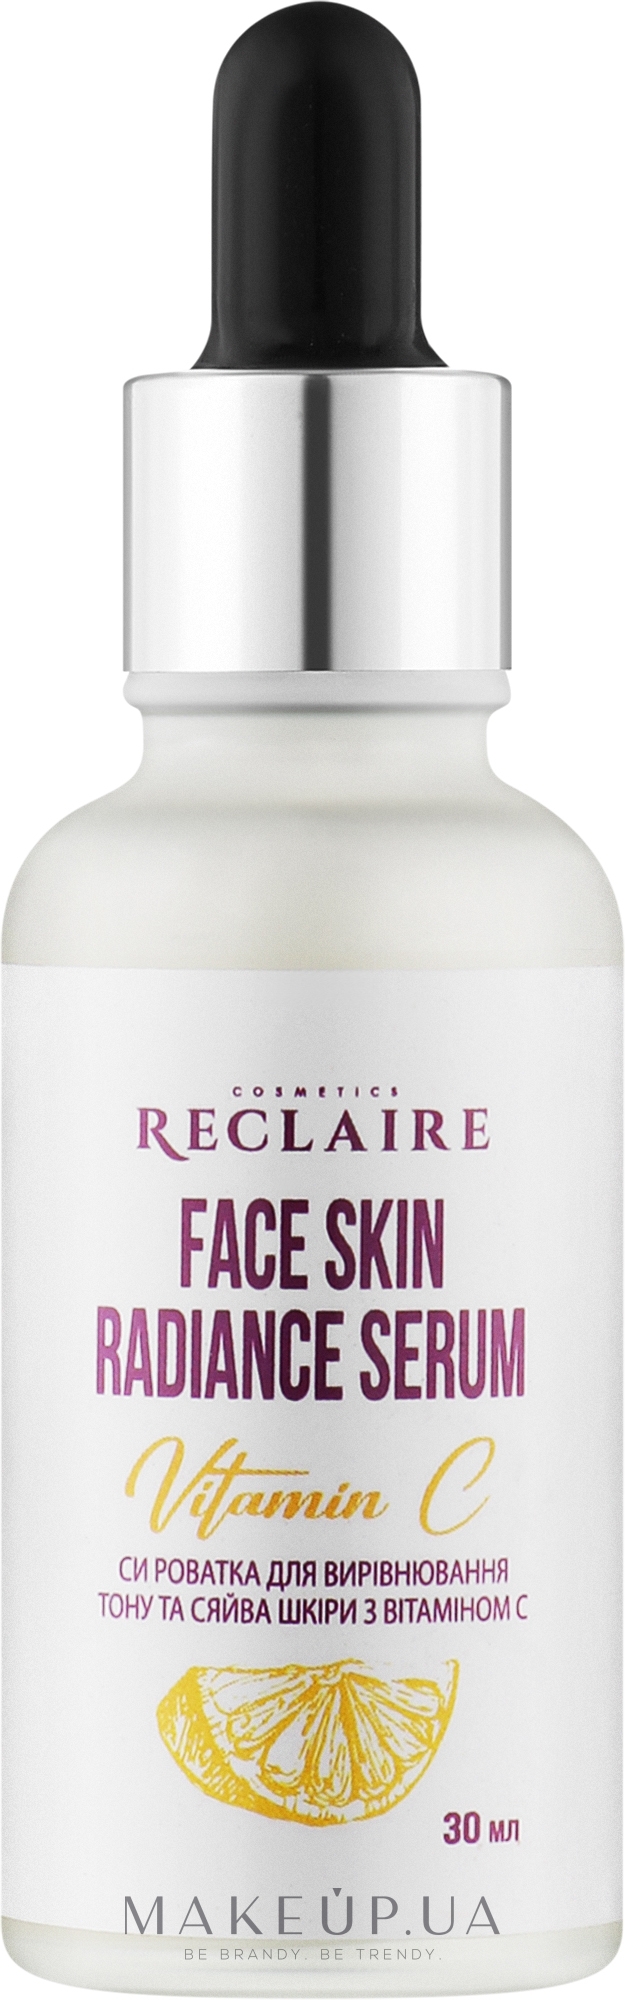 Сироватка для вирівнювання тону та сяйва шкіри з вітаміном C - Reclaire Face Skin Radiance Serum — фото 30ml